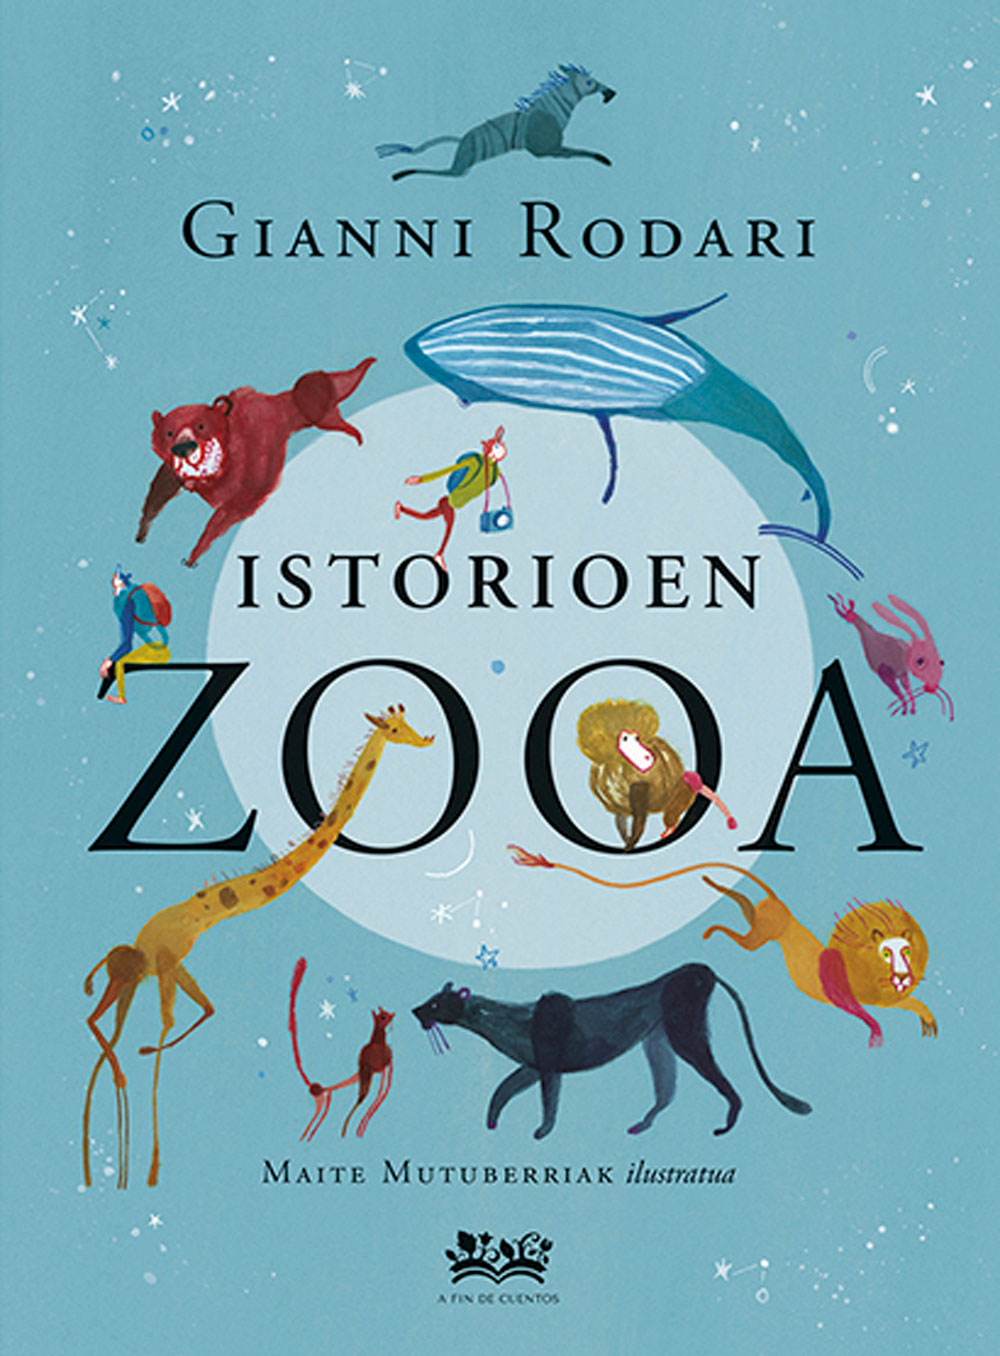 Istorioen zooa | Egilea: Gianni Rodari | Ilustratzailea: Maite Mutuberria | Itzultzailea: Uxoa Iñurrieta | A fin de cuentos, 2020.